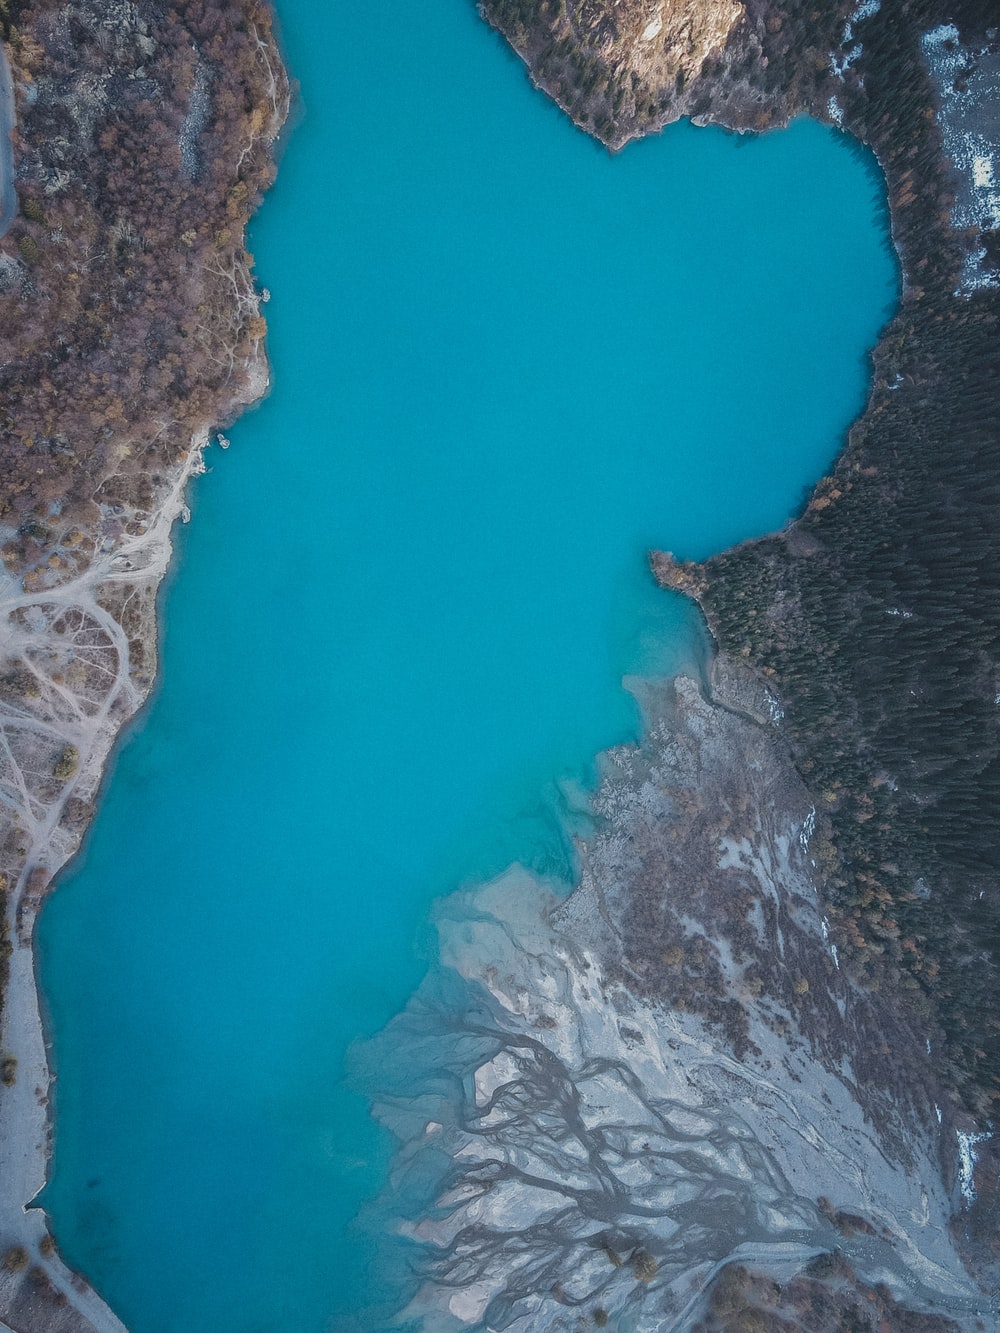 蓝色湖水俯视图片